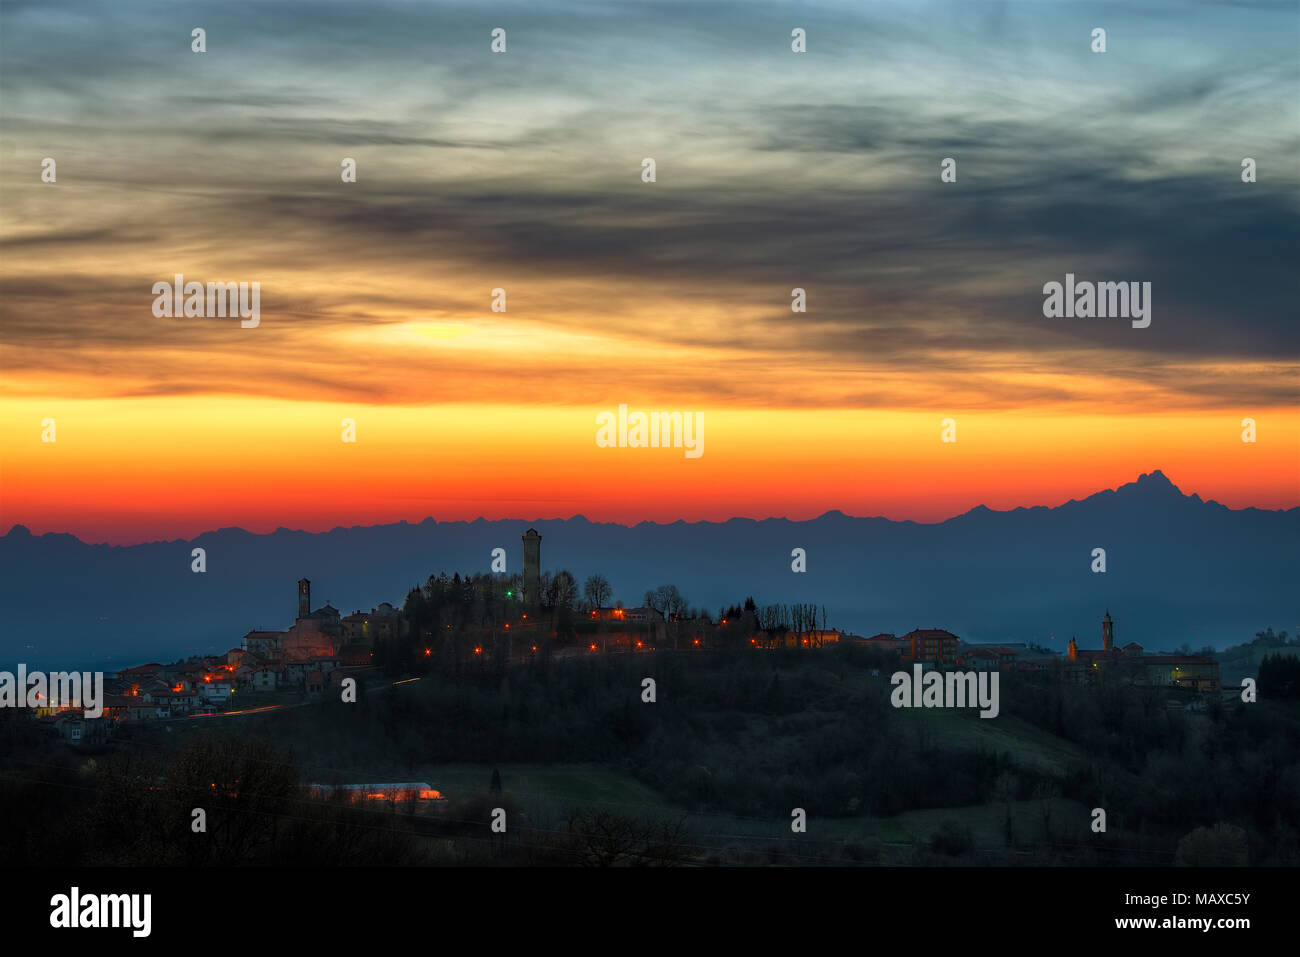 Le langhe - un cielo di masterizzazione, al calar della sera, disegna il panorama delle Alpi, con il vertiginoso aumento del Monviso, mentre nella città di Murazzano le luci sono accese. Foto Stock